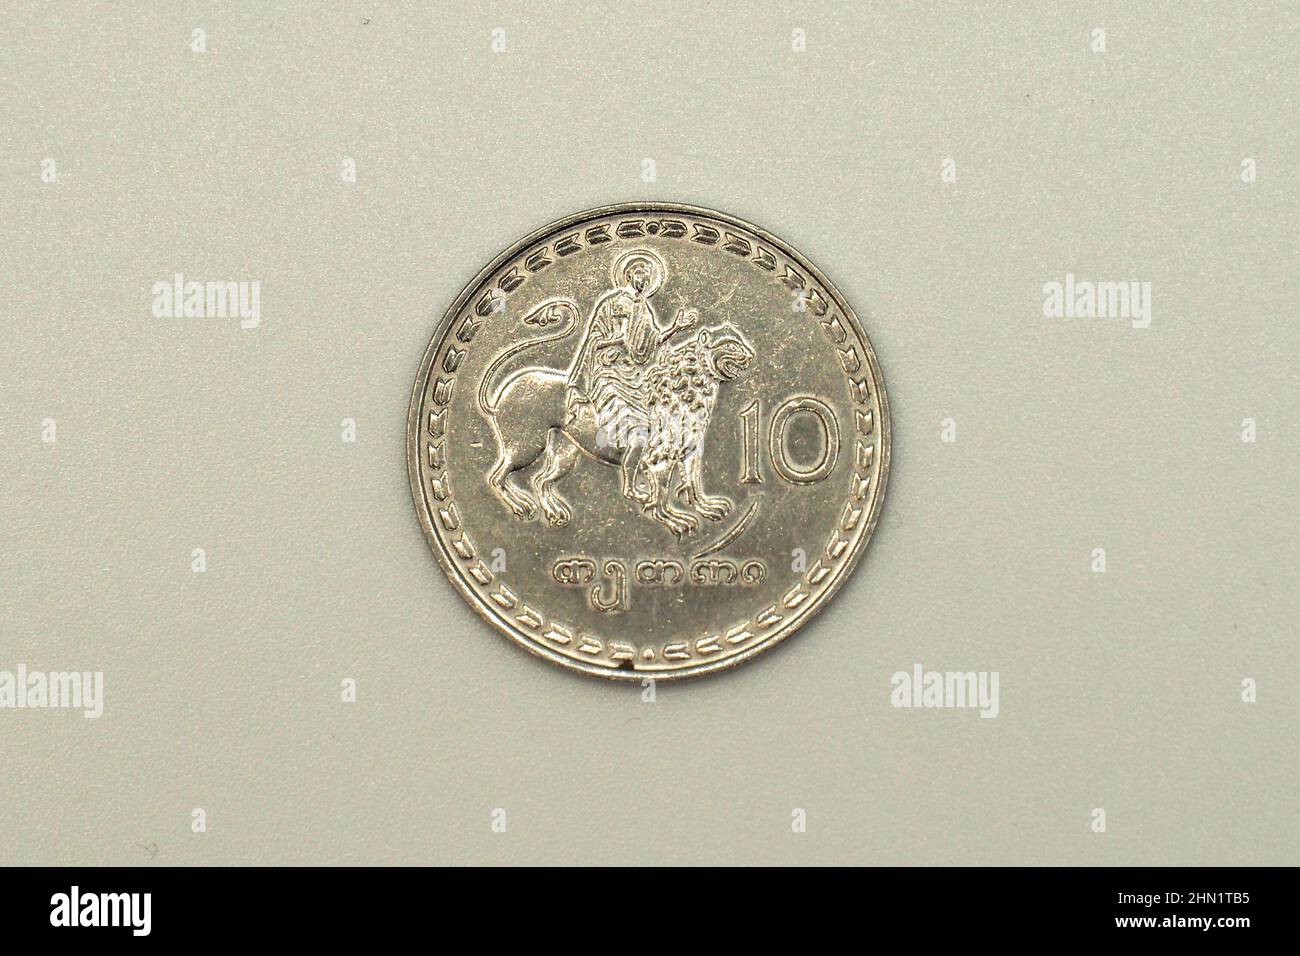 ten (10) tetri coin, Georgian lari (GEL), Georgia, Europe Stock Photo